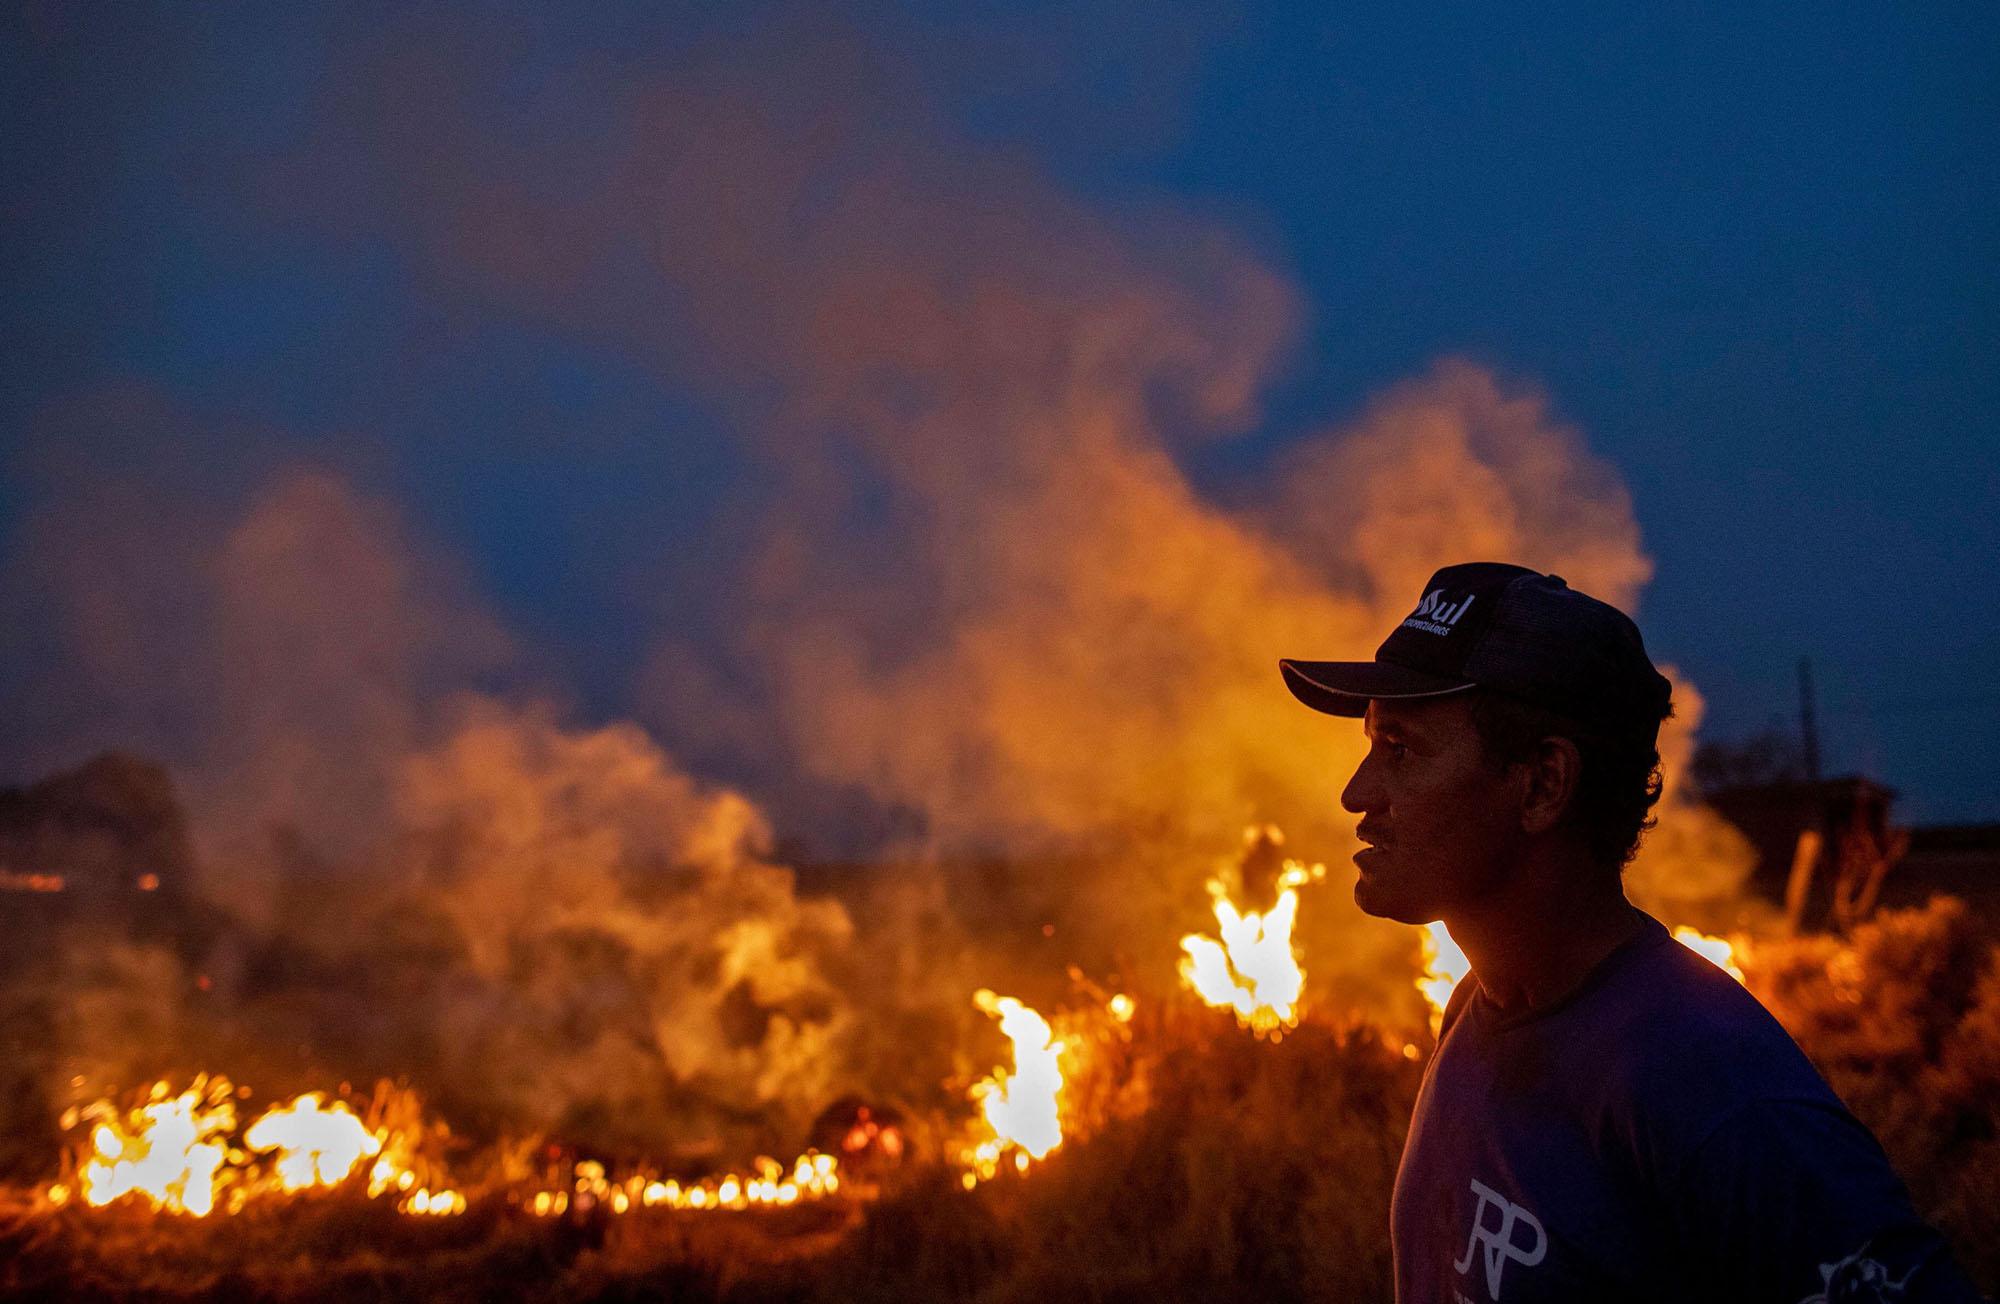 Photos: The Burning Amazon Rainforest